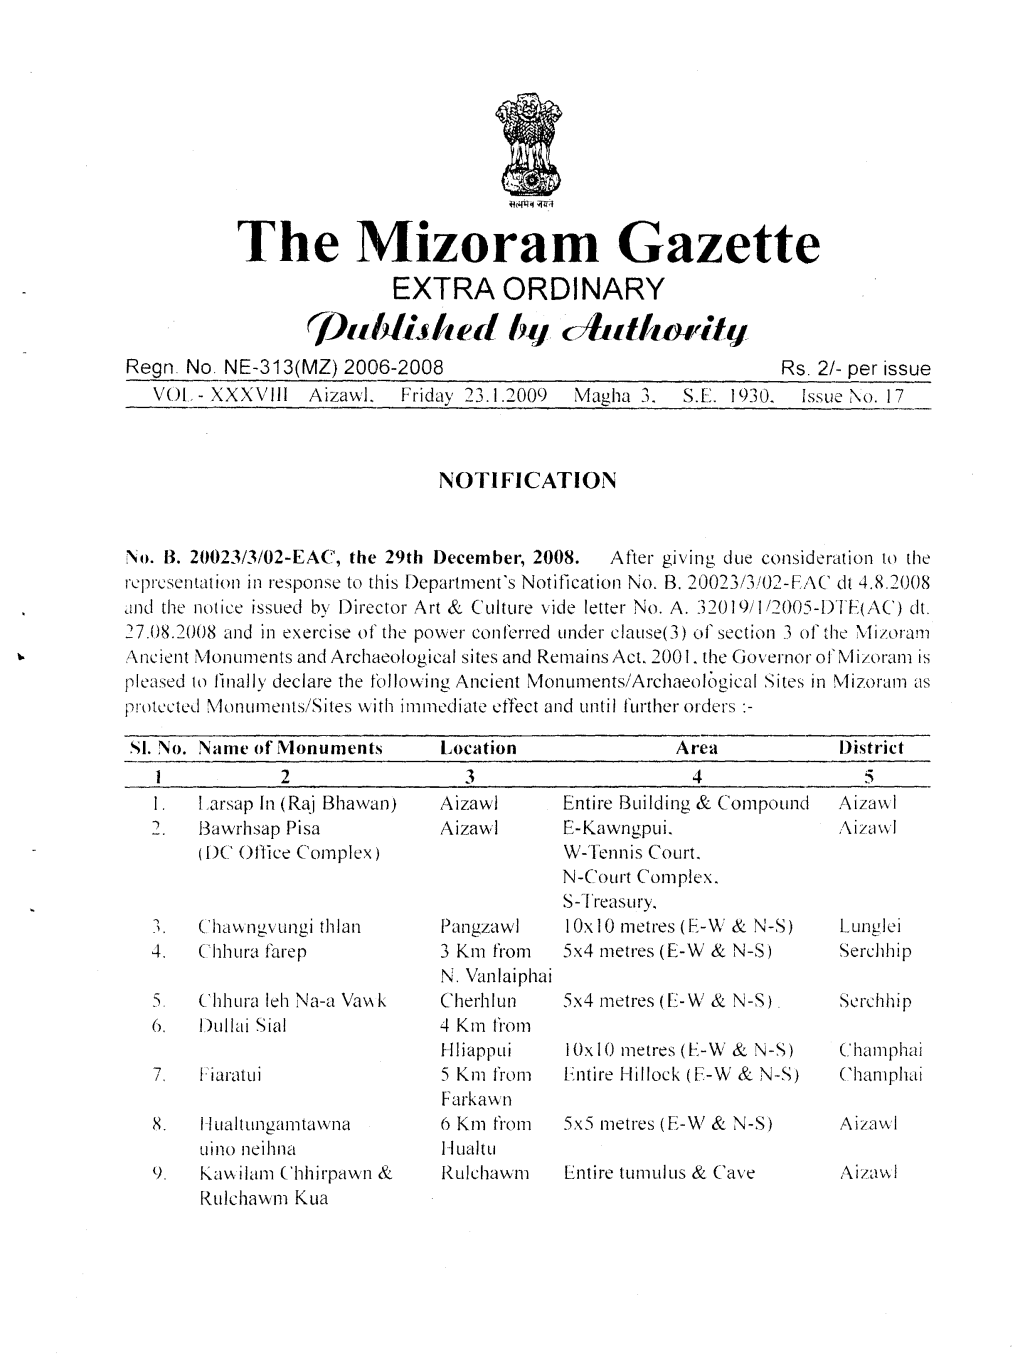 The Mizoram Gazette EXTRA ORDINARY (Jjllbli~/Lf!£L Hy Cjblljlbllily Regn No